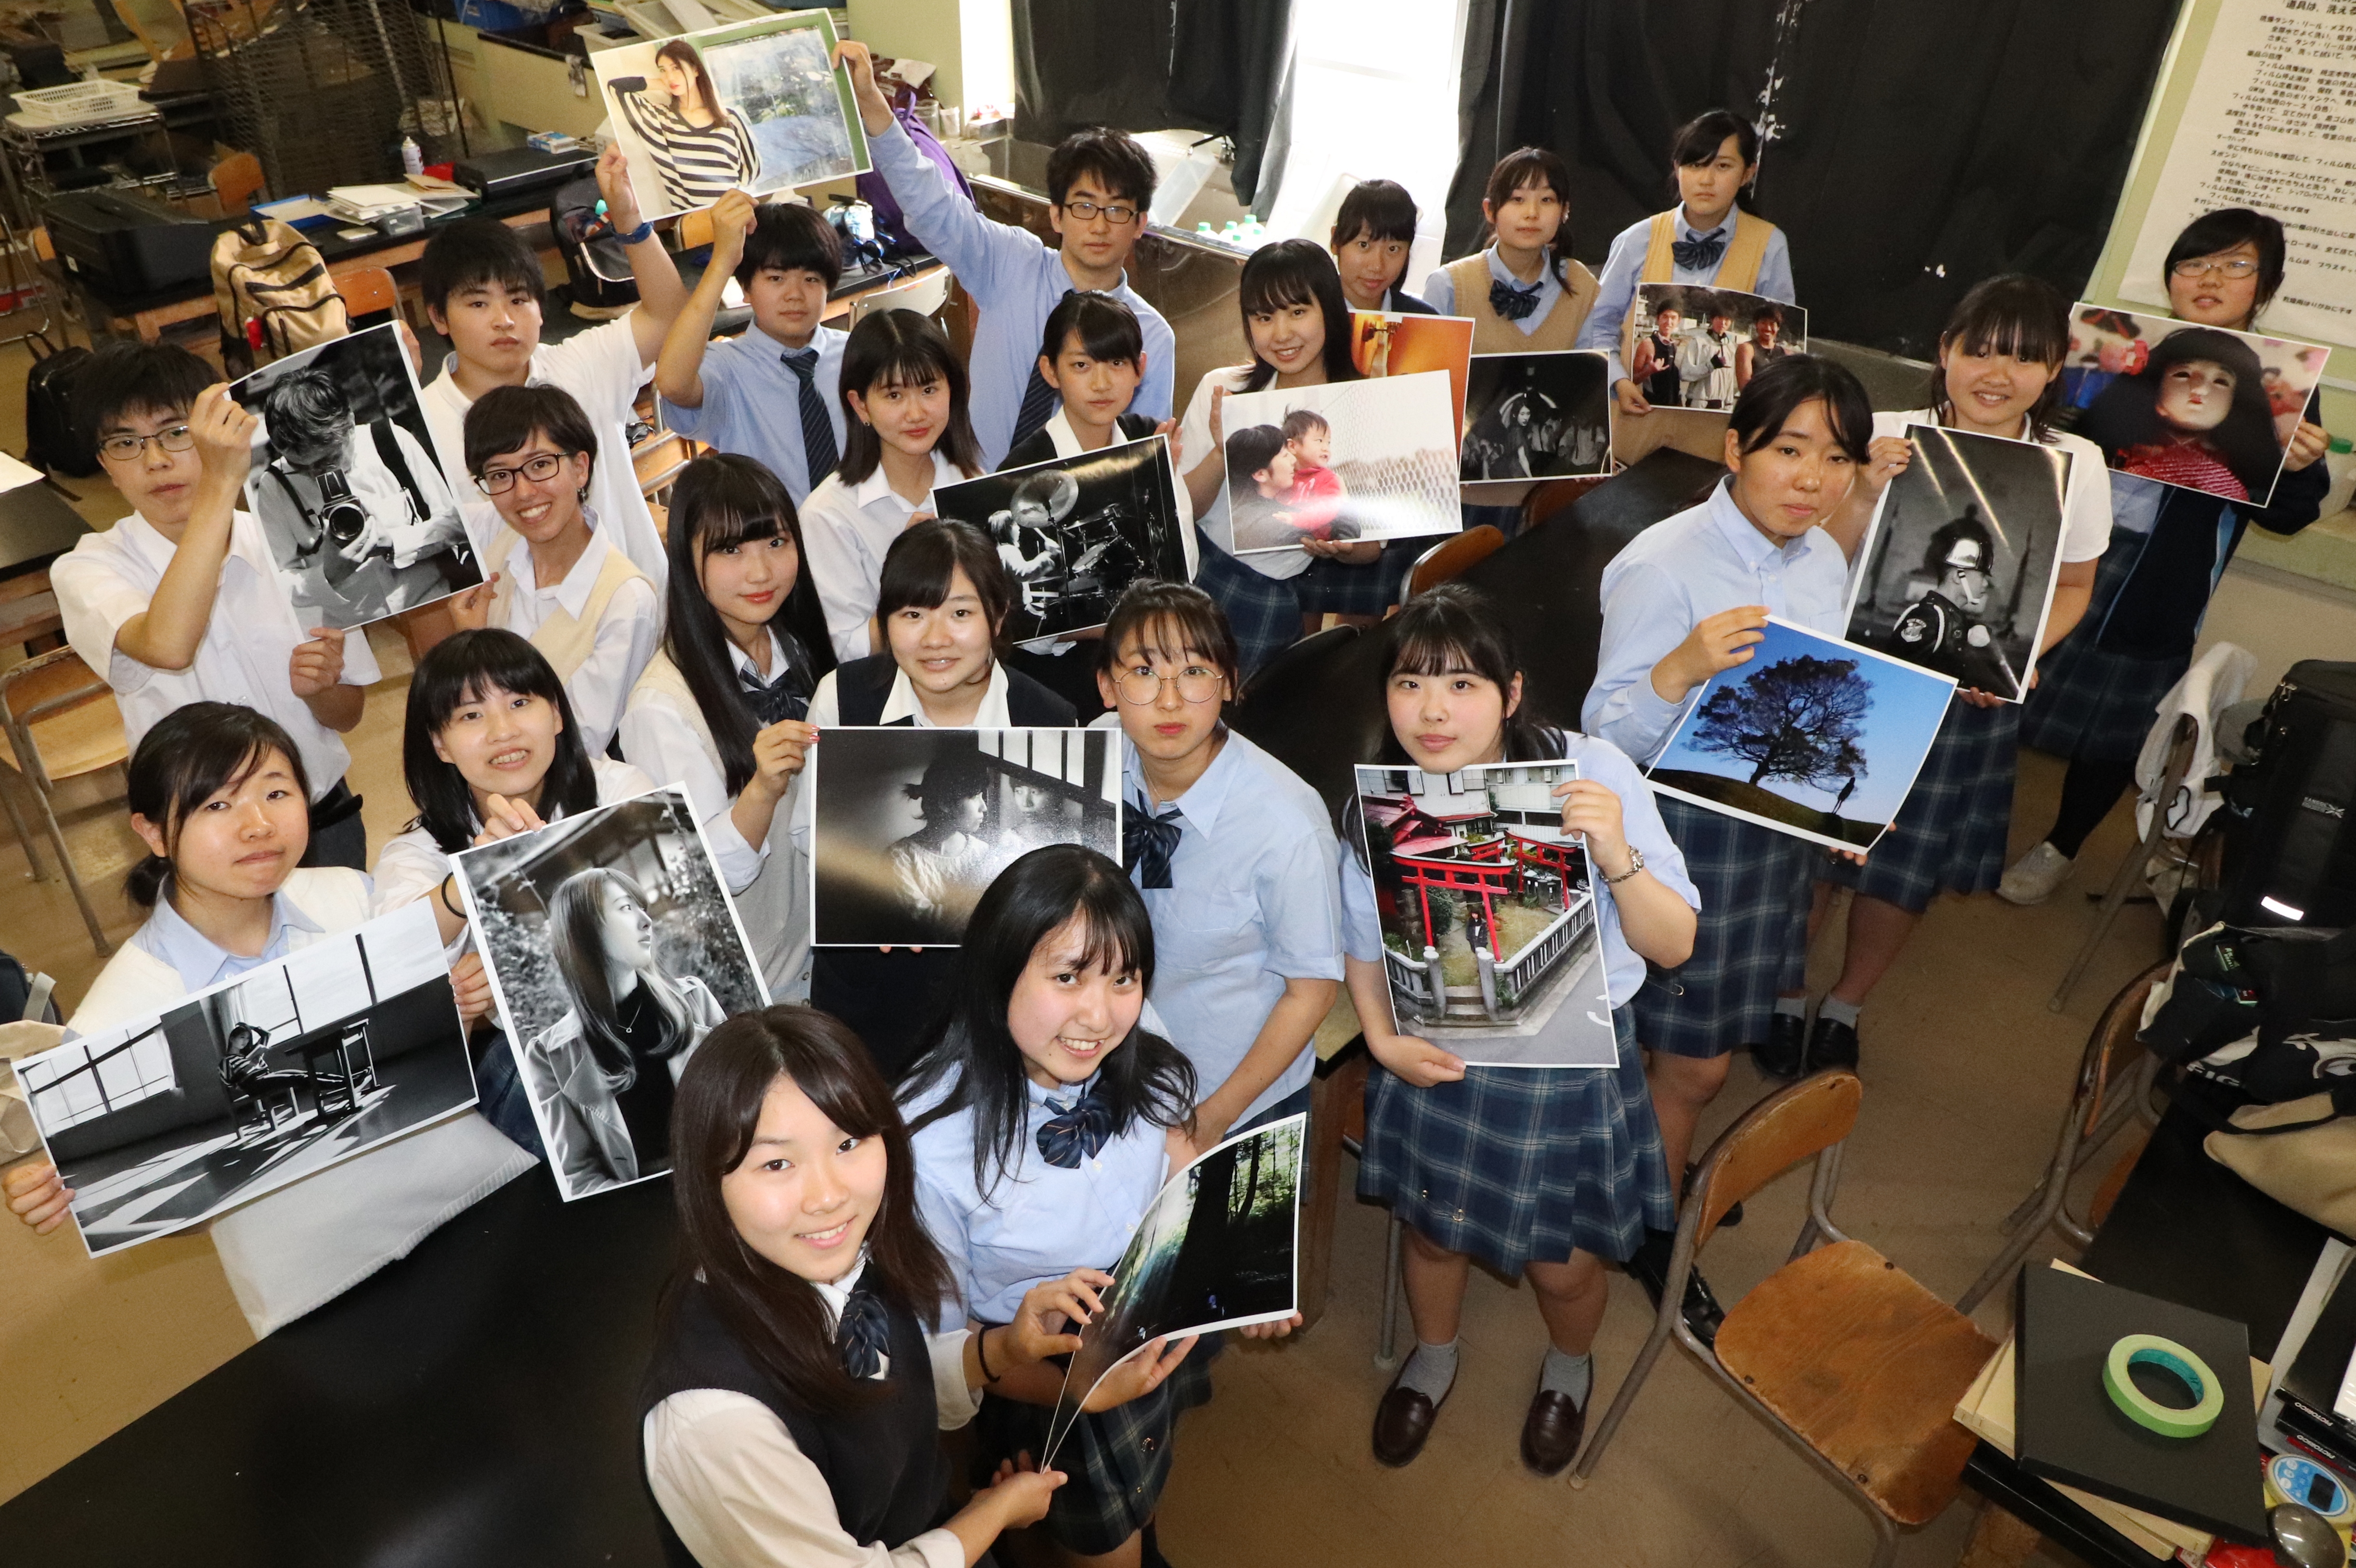 県立横浜清陵高校 写真部 世の中の様々な魅力を写真で表現する 高校レポ よみうり進学メディア